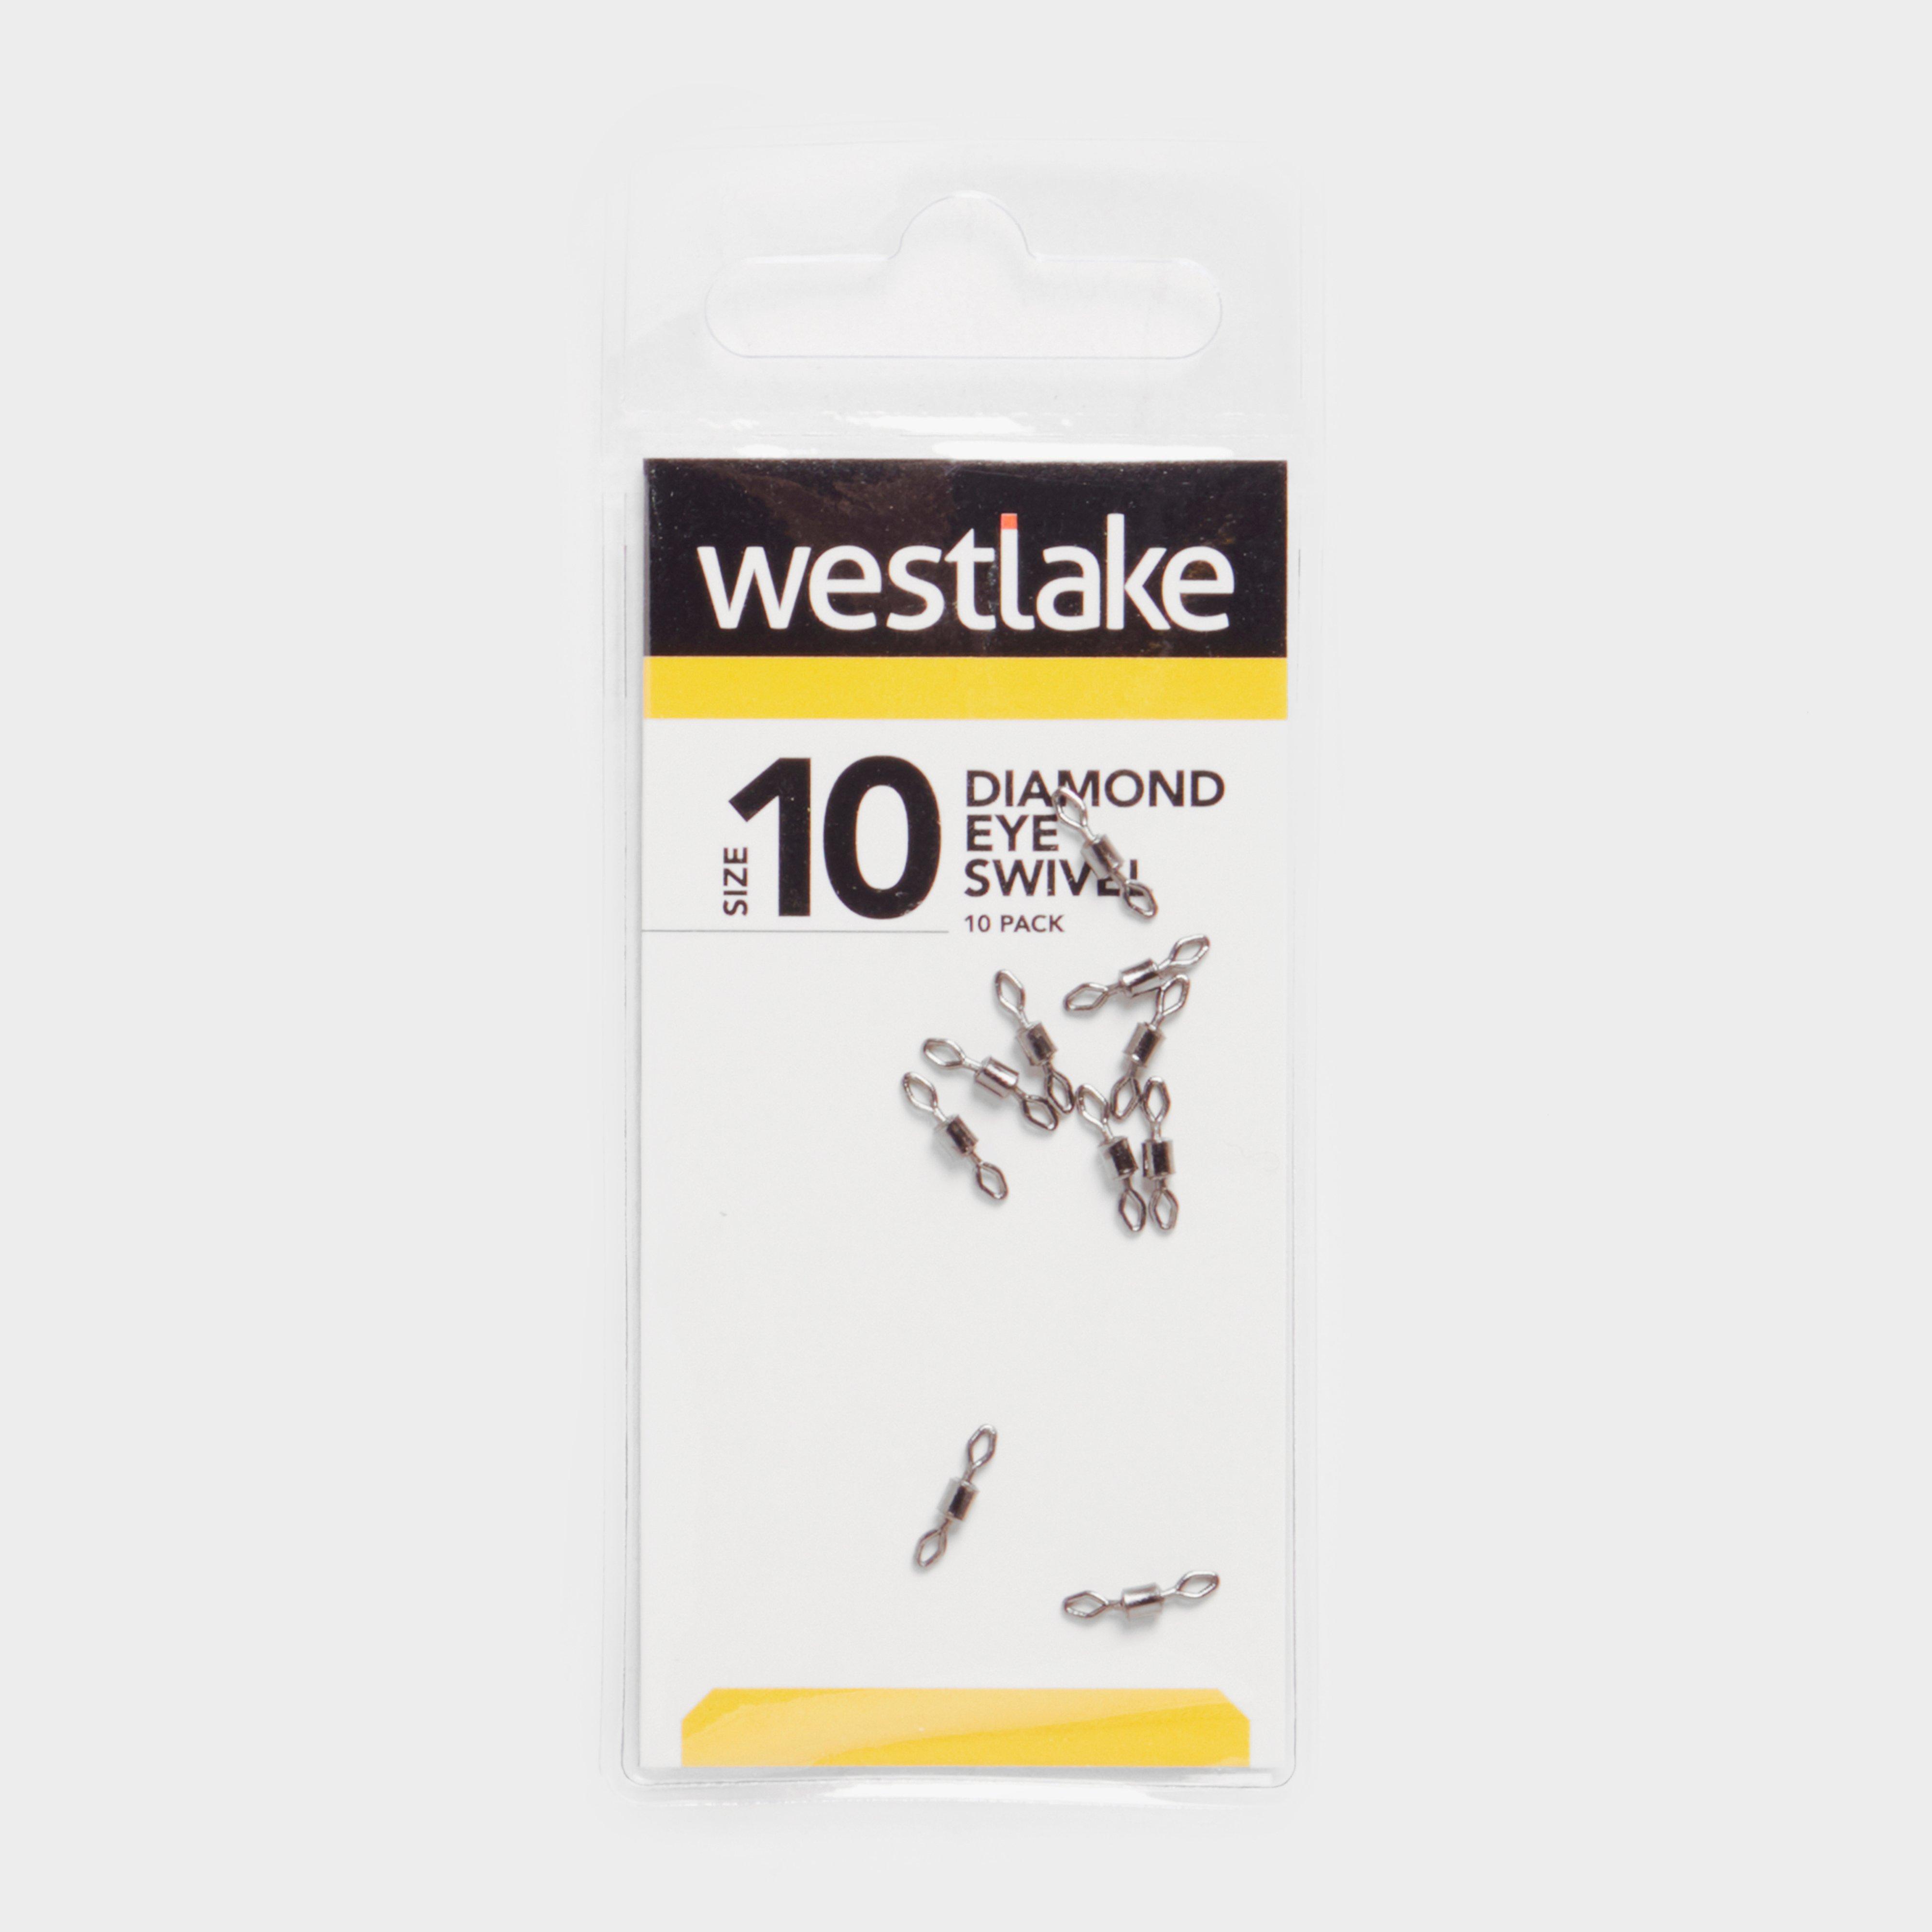 Westlake Diamond Eye Swivel Size 10